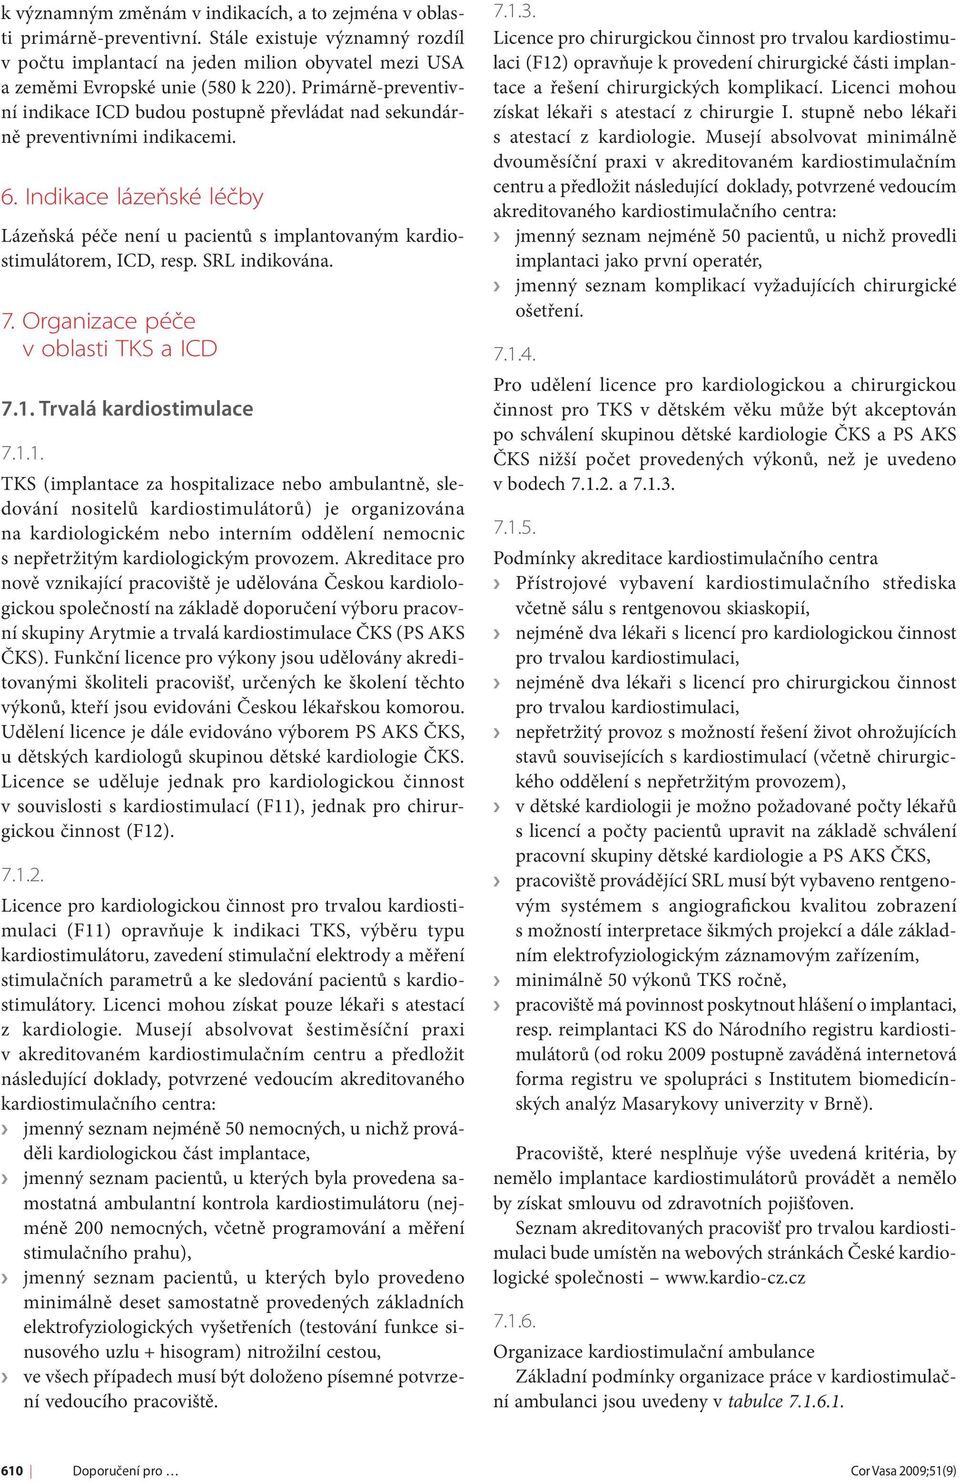 Indikace lázeňské léčby Lázeňská péče není u pacientů s implantovaným kardiostimulátorem, ICD, resp. SRL indikována. 7. Organizace péče v oblasti TKS a ICD 7.1.